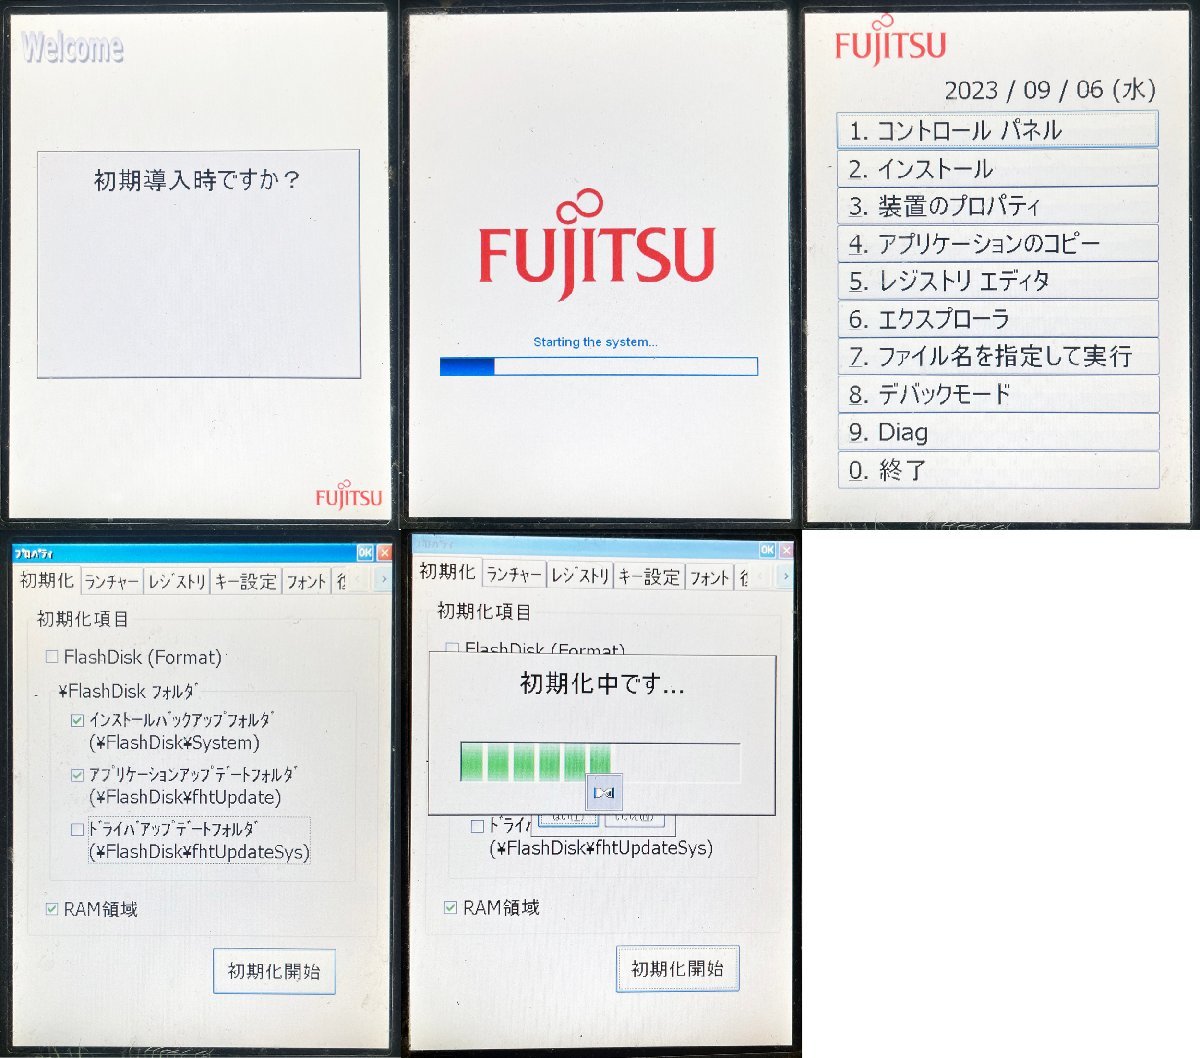 M* Fujitsu (Fujitsu)/ портативный терминал /Handheld Terminal MultiPad V2/FHT451BS 3 шт. комплект / cradle зарядное устройство 3 шт. имеется / первый период . settled (2